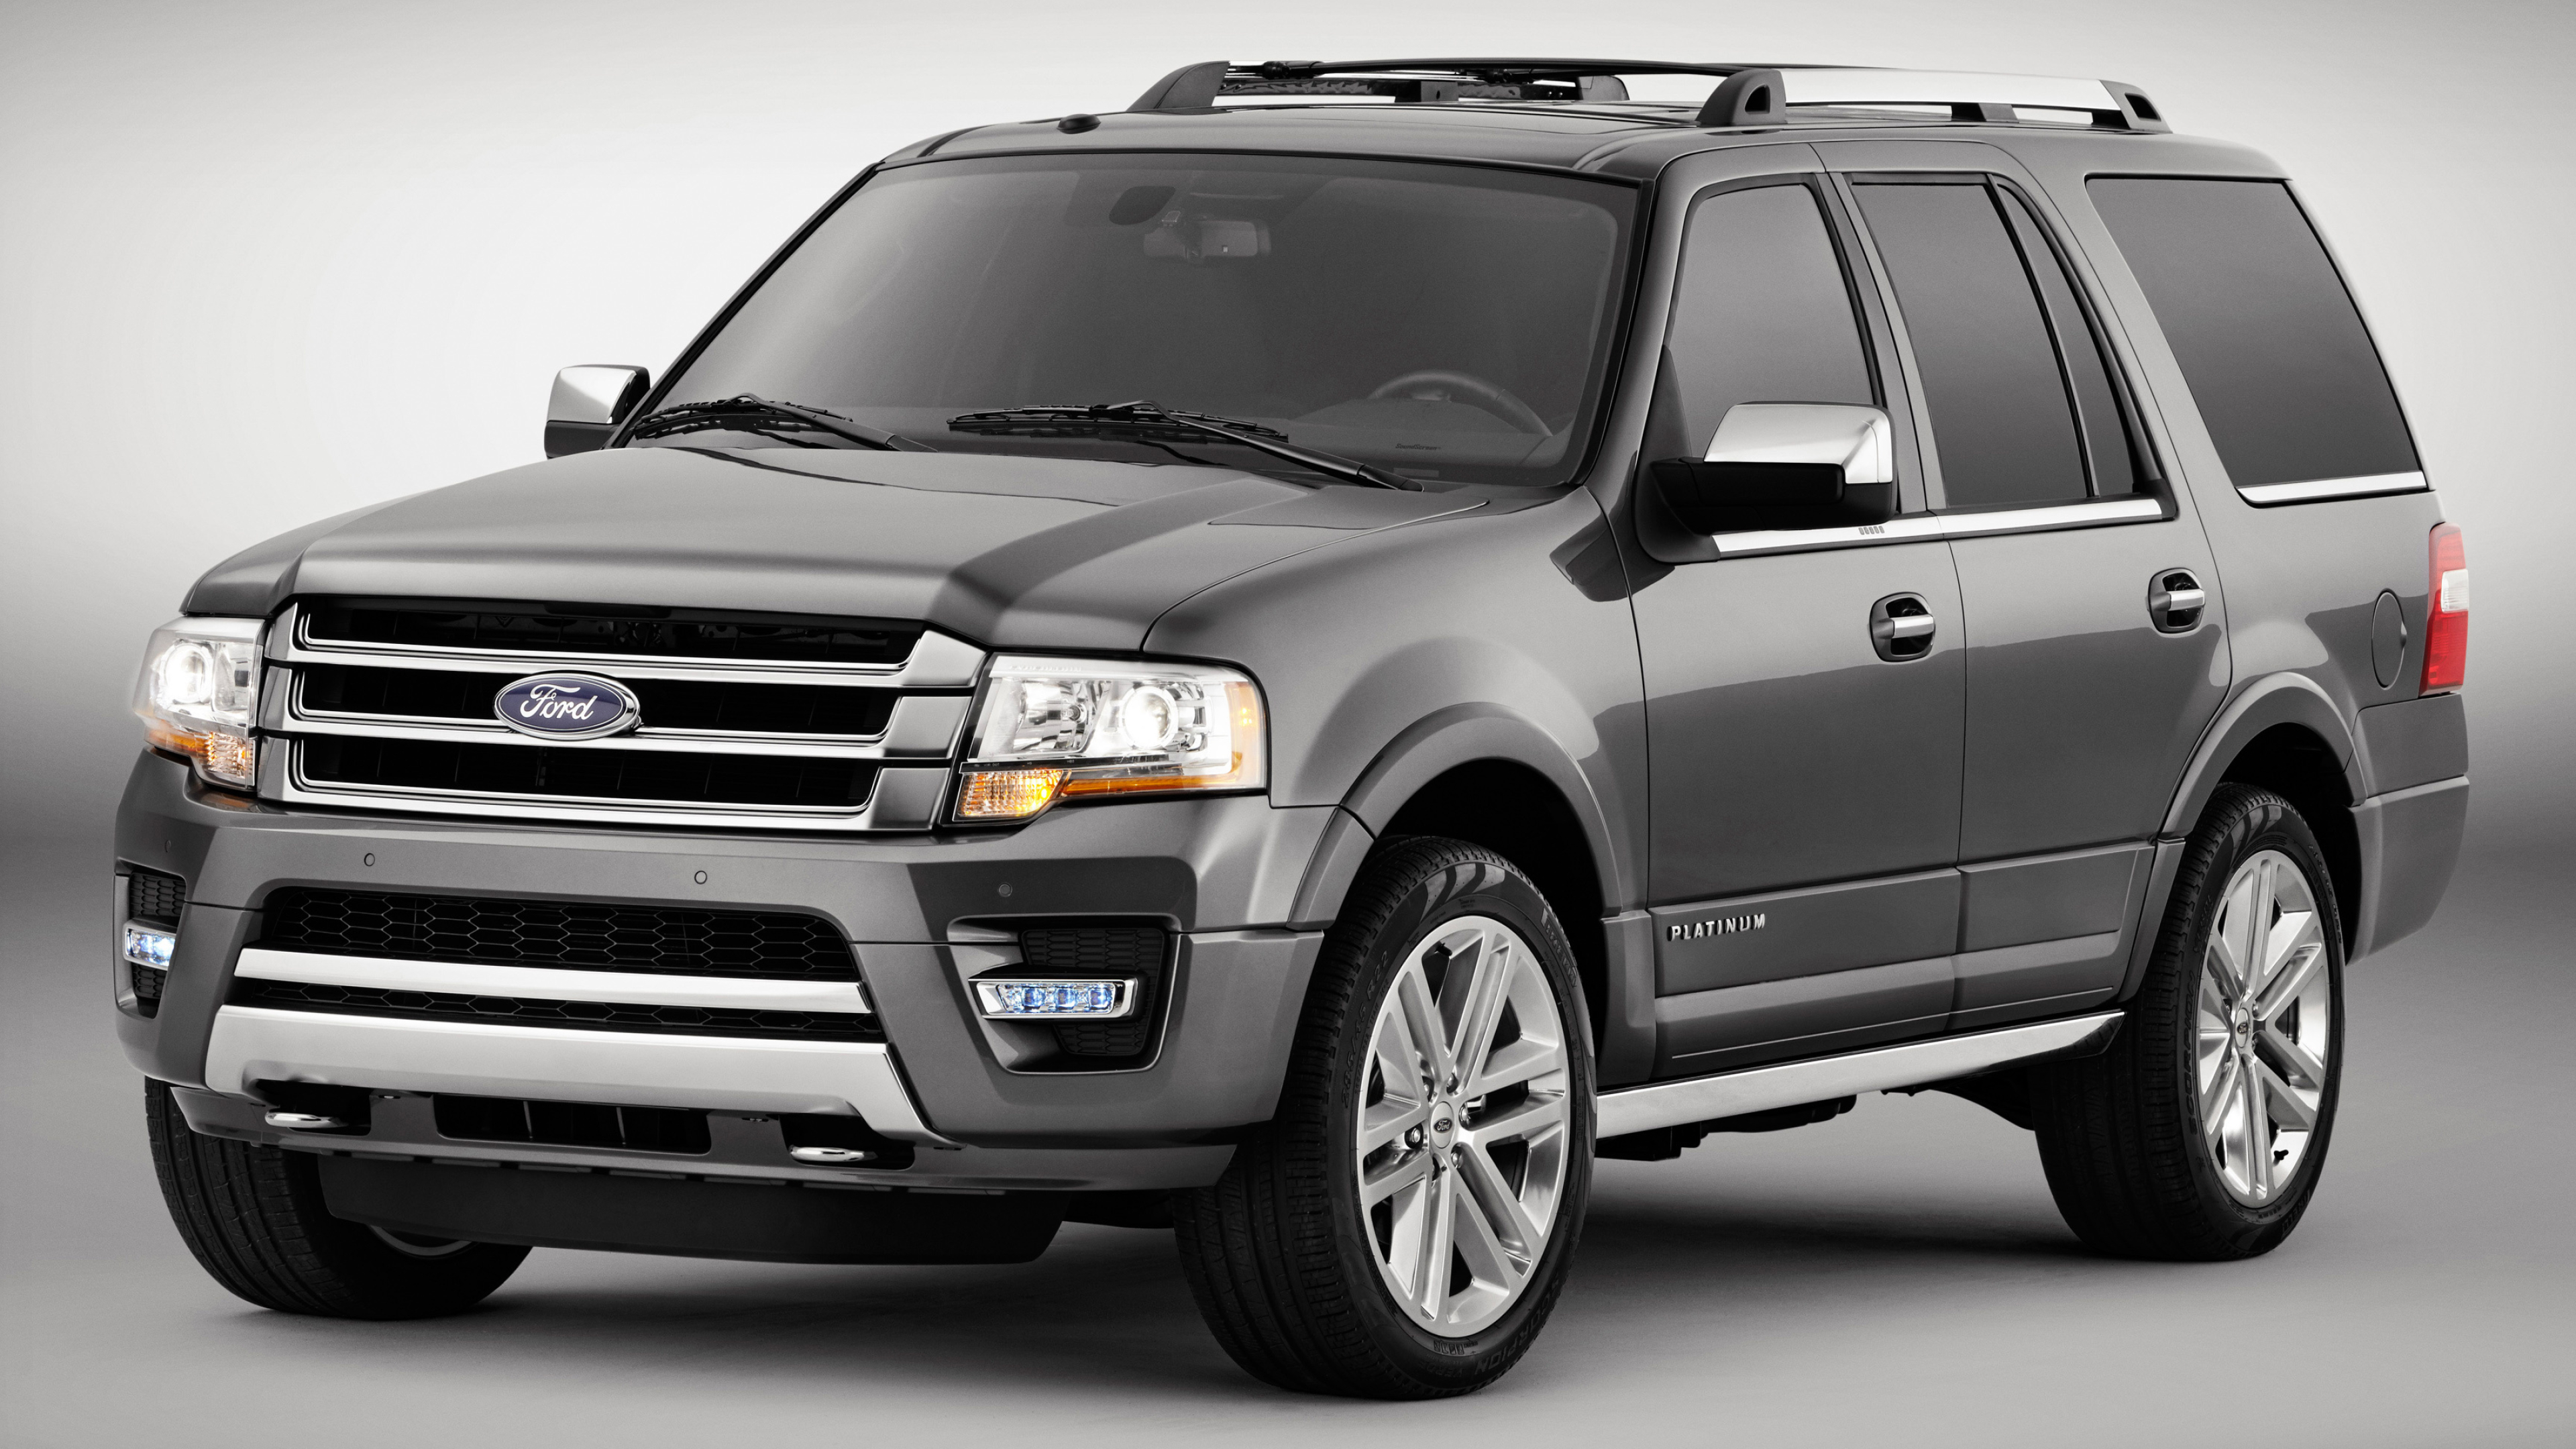 Ford Expedition, Platinum 2014, Cars desktop wallpapers, 3840x2160 4K Desktop